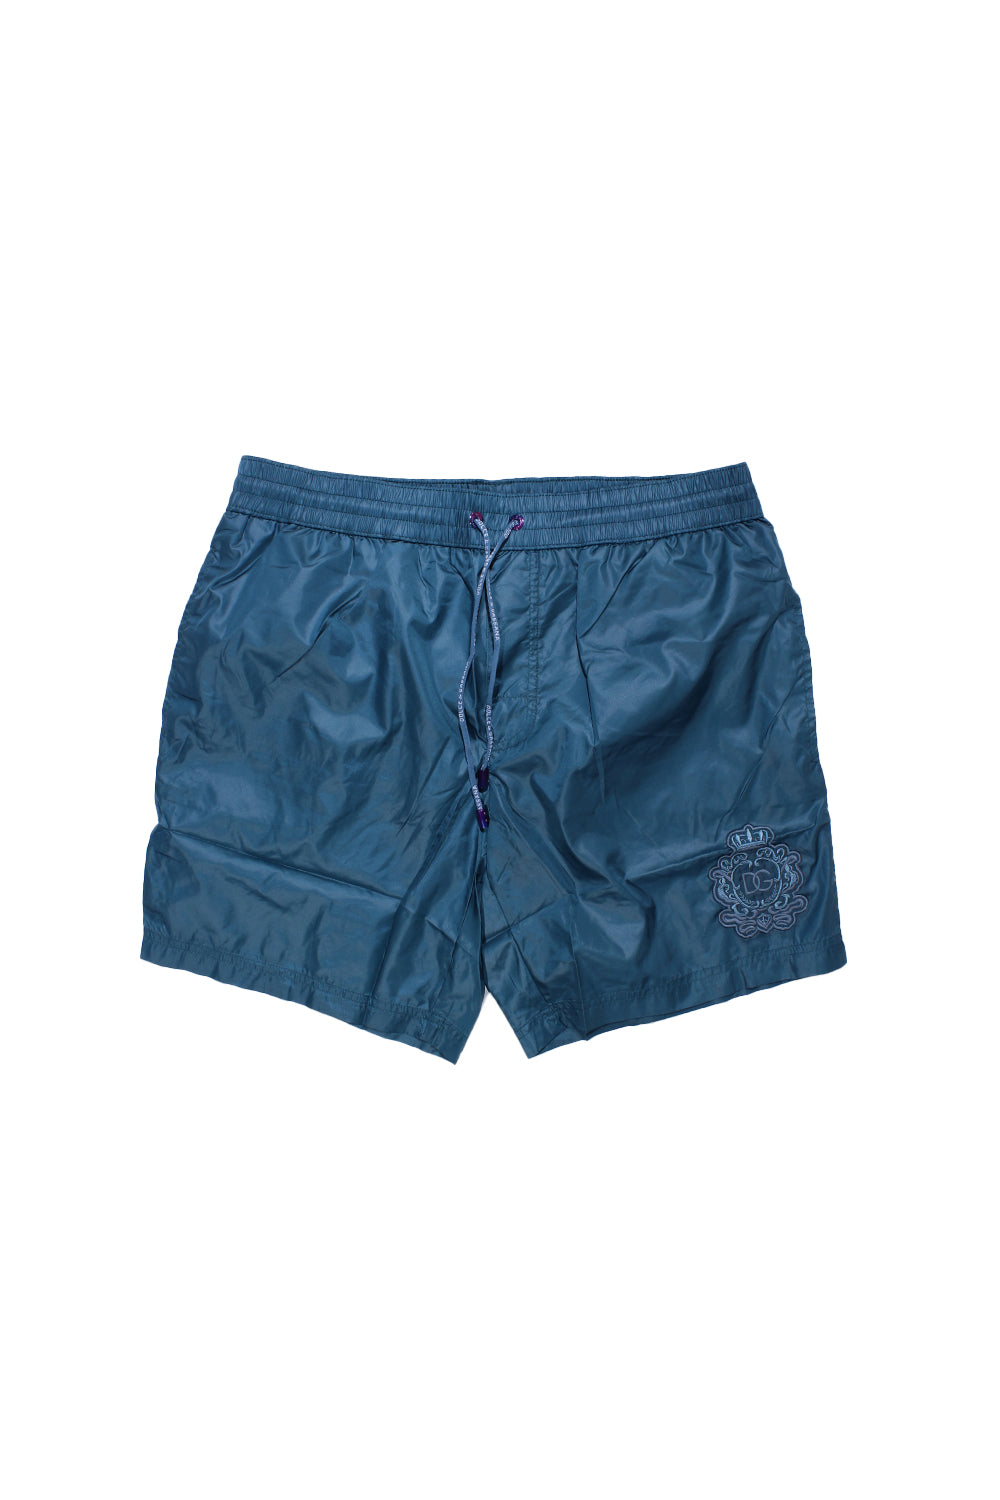 Dolce & Gabbana Swimwear Shorts